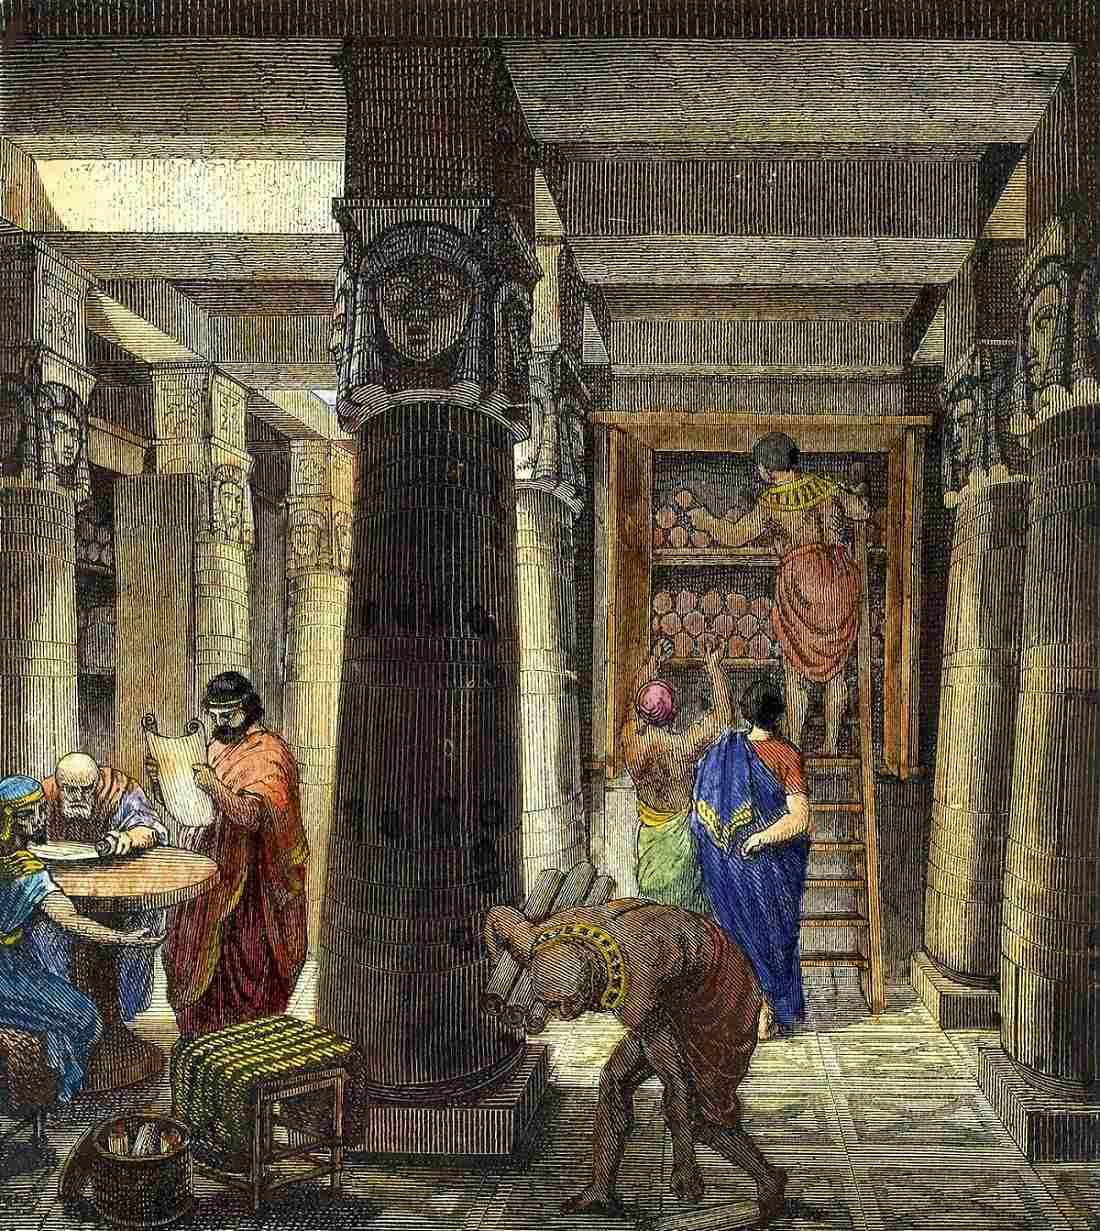 La Bibliothèque d'Assurbanipal : La plus ancienne bibliothèque connue qui a inspiré la Bibliothèque d'Alexandrie 1